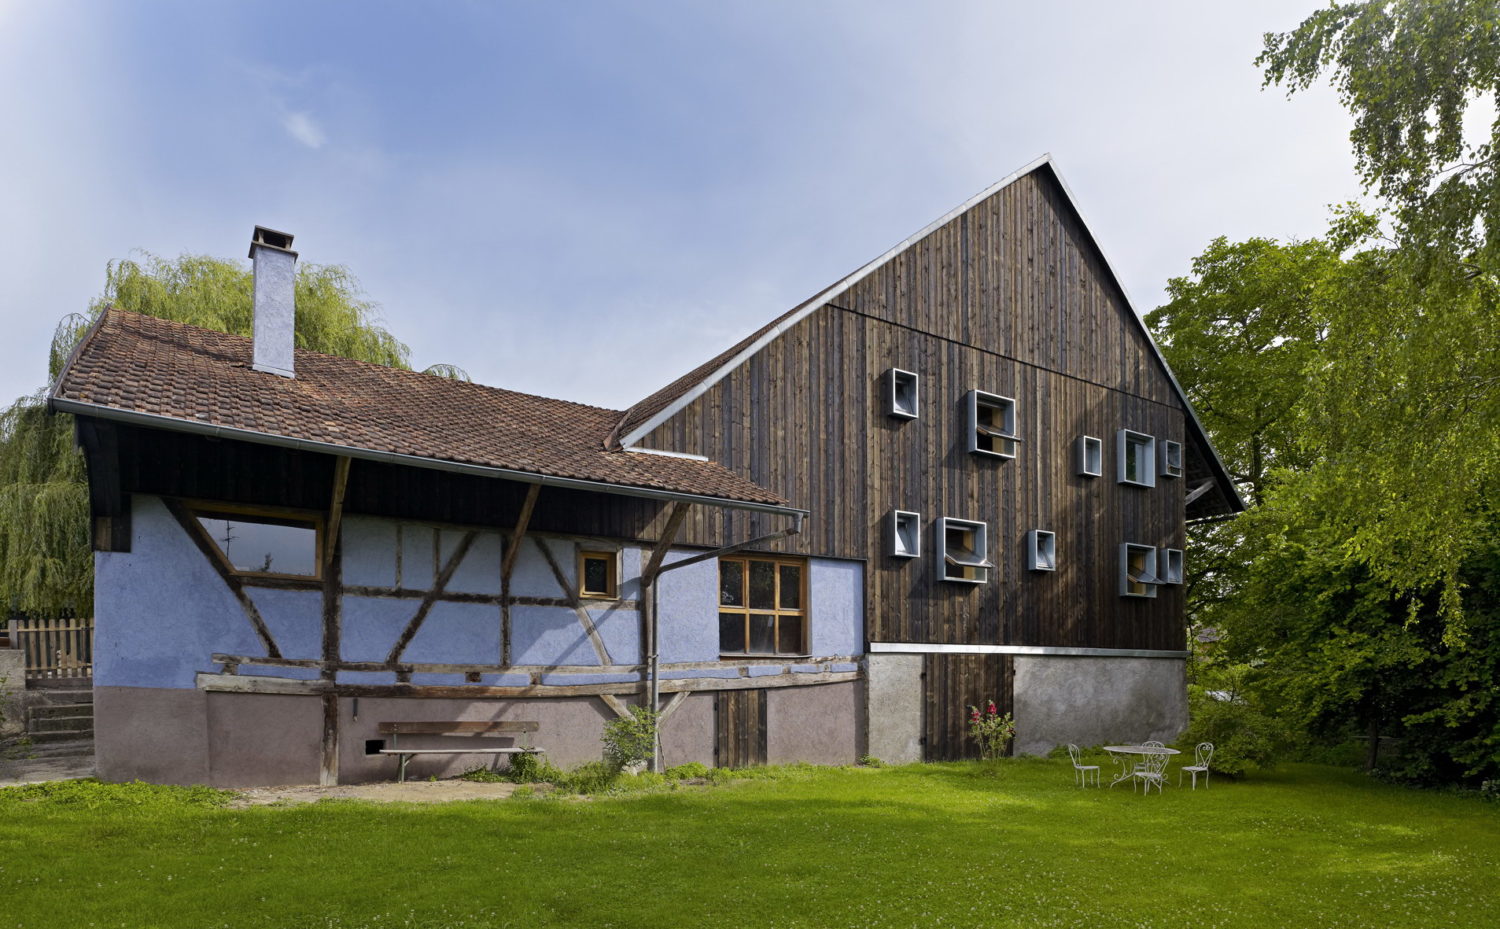 Farm Building Renovation by Loïc Picquet Architecte